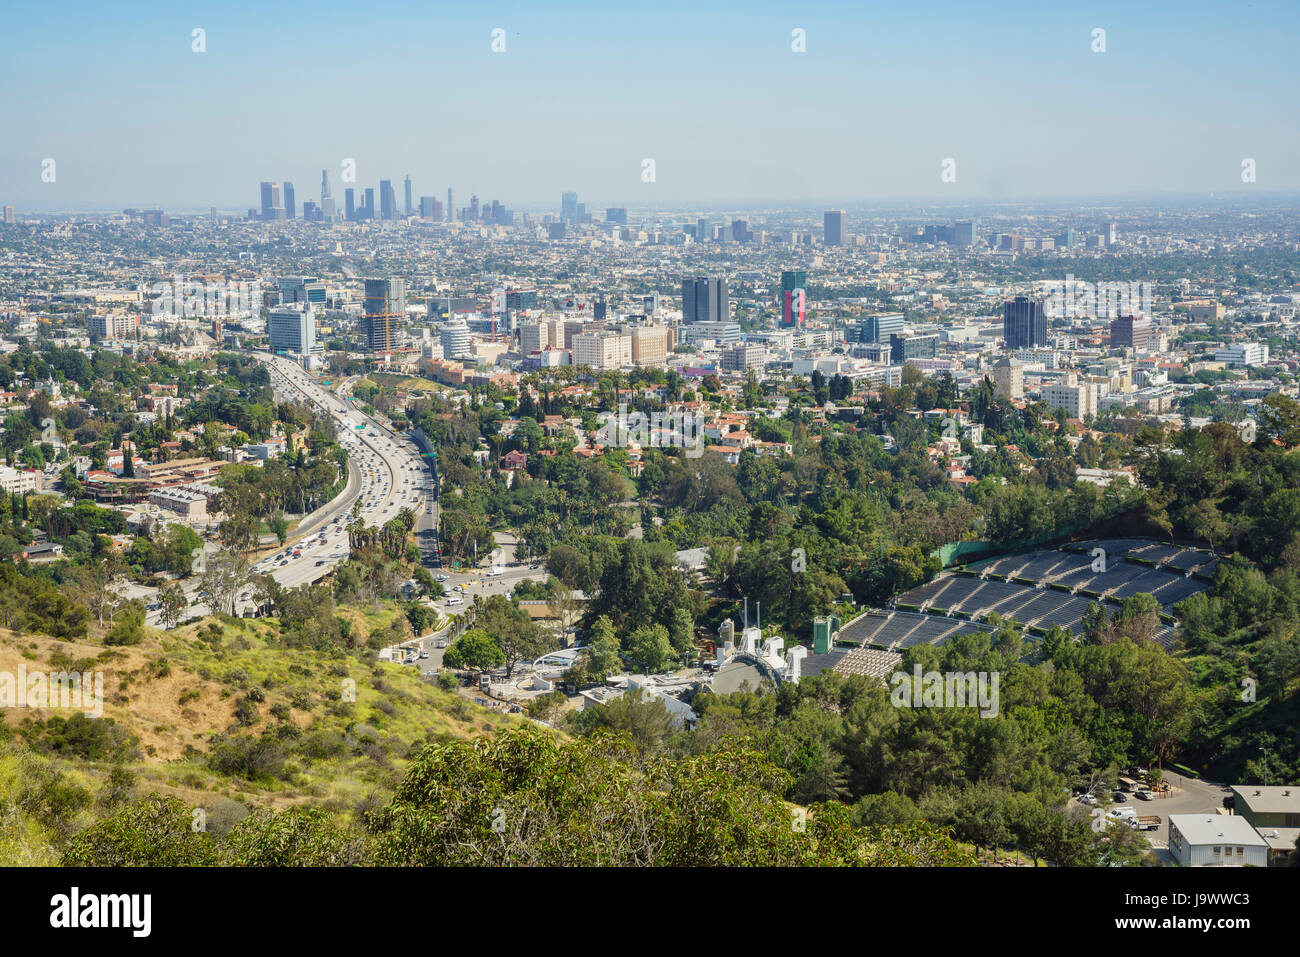 Am Nachmittag Luftaufnahme der Skyline von Los Angeles mit Highway aus Hollywood Schüssel übersehen, California Stockfoto